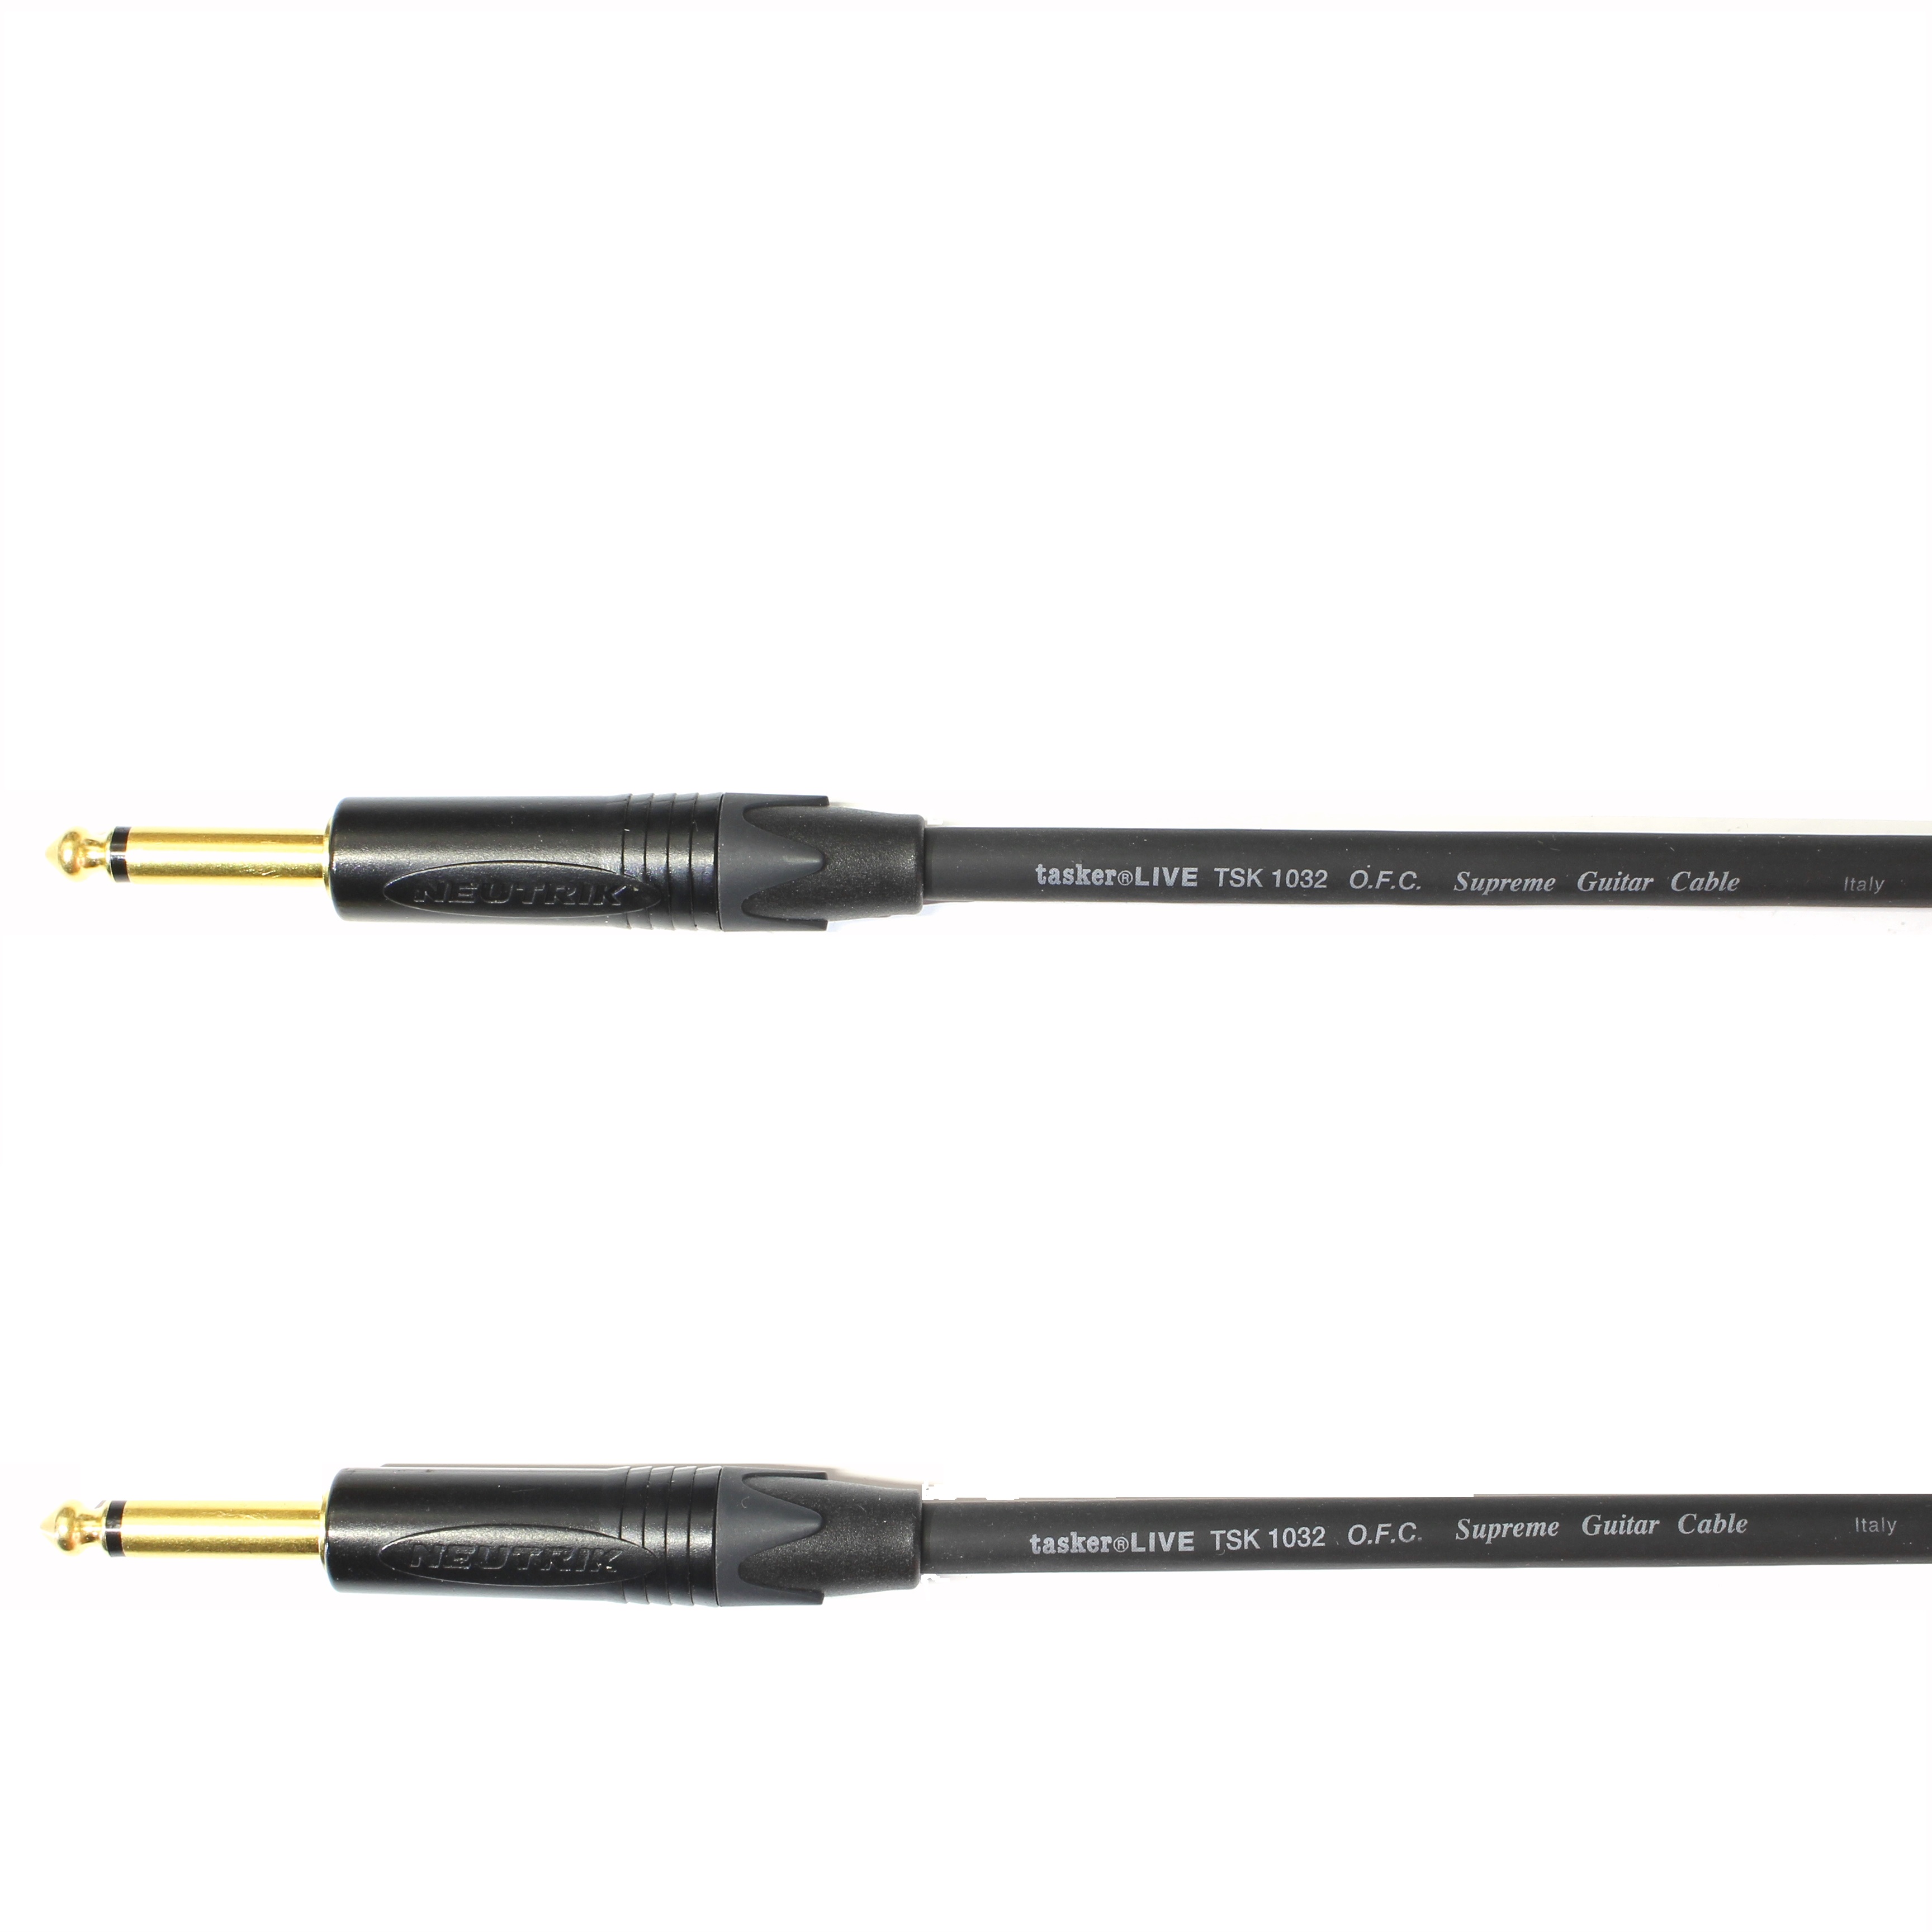 Kytarový kabel Jack 6,3 mono přímý/ Jack 6,3 mono přímý, 8 m, TSK1032